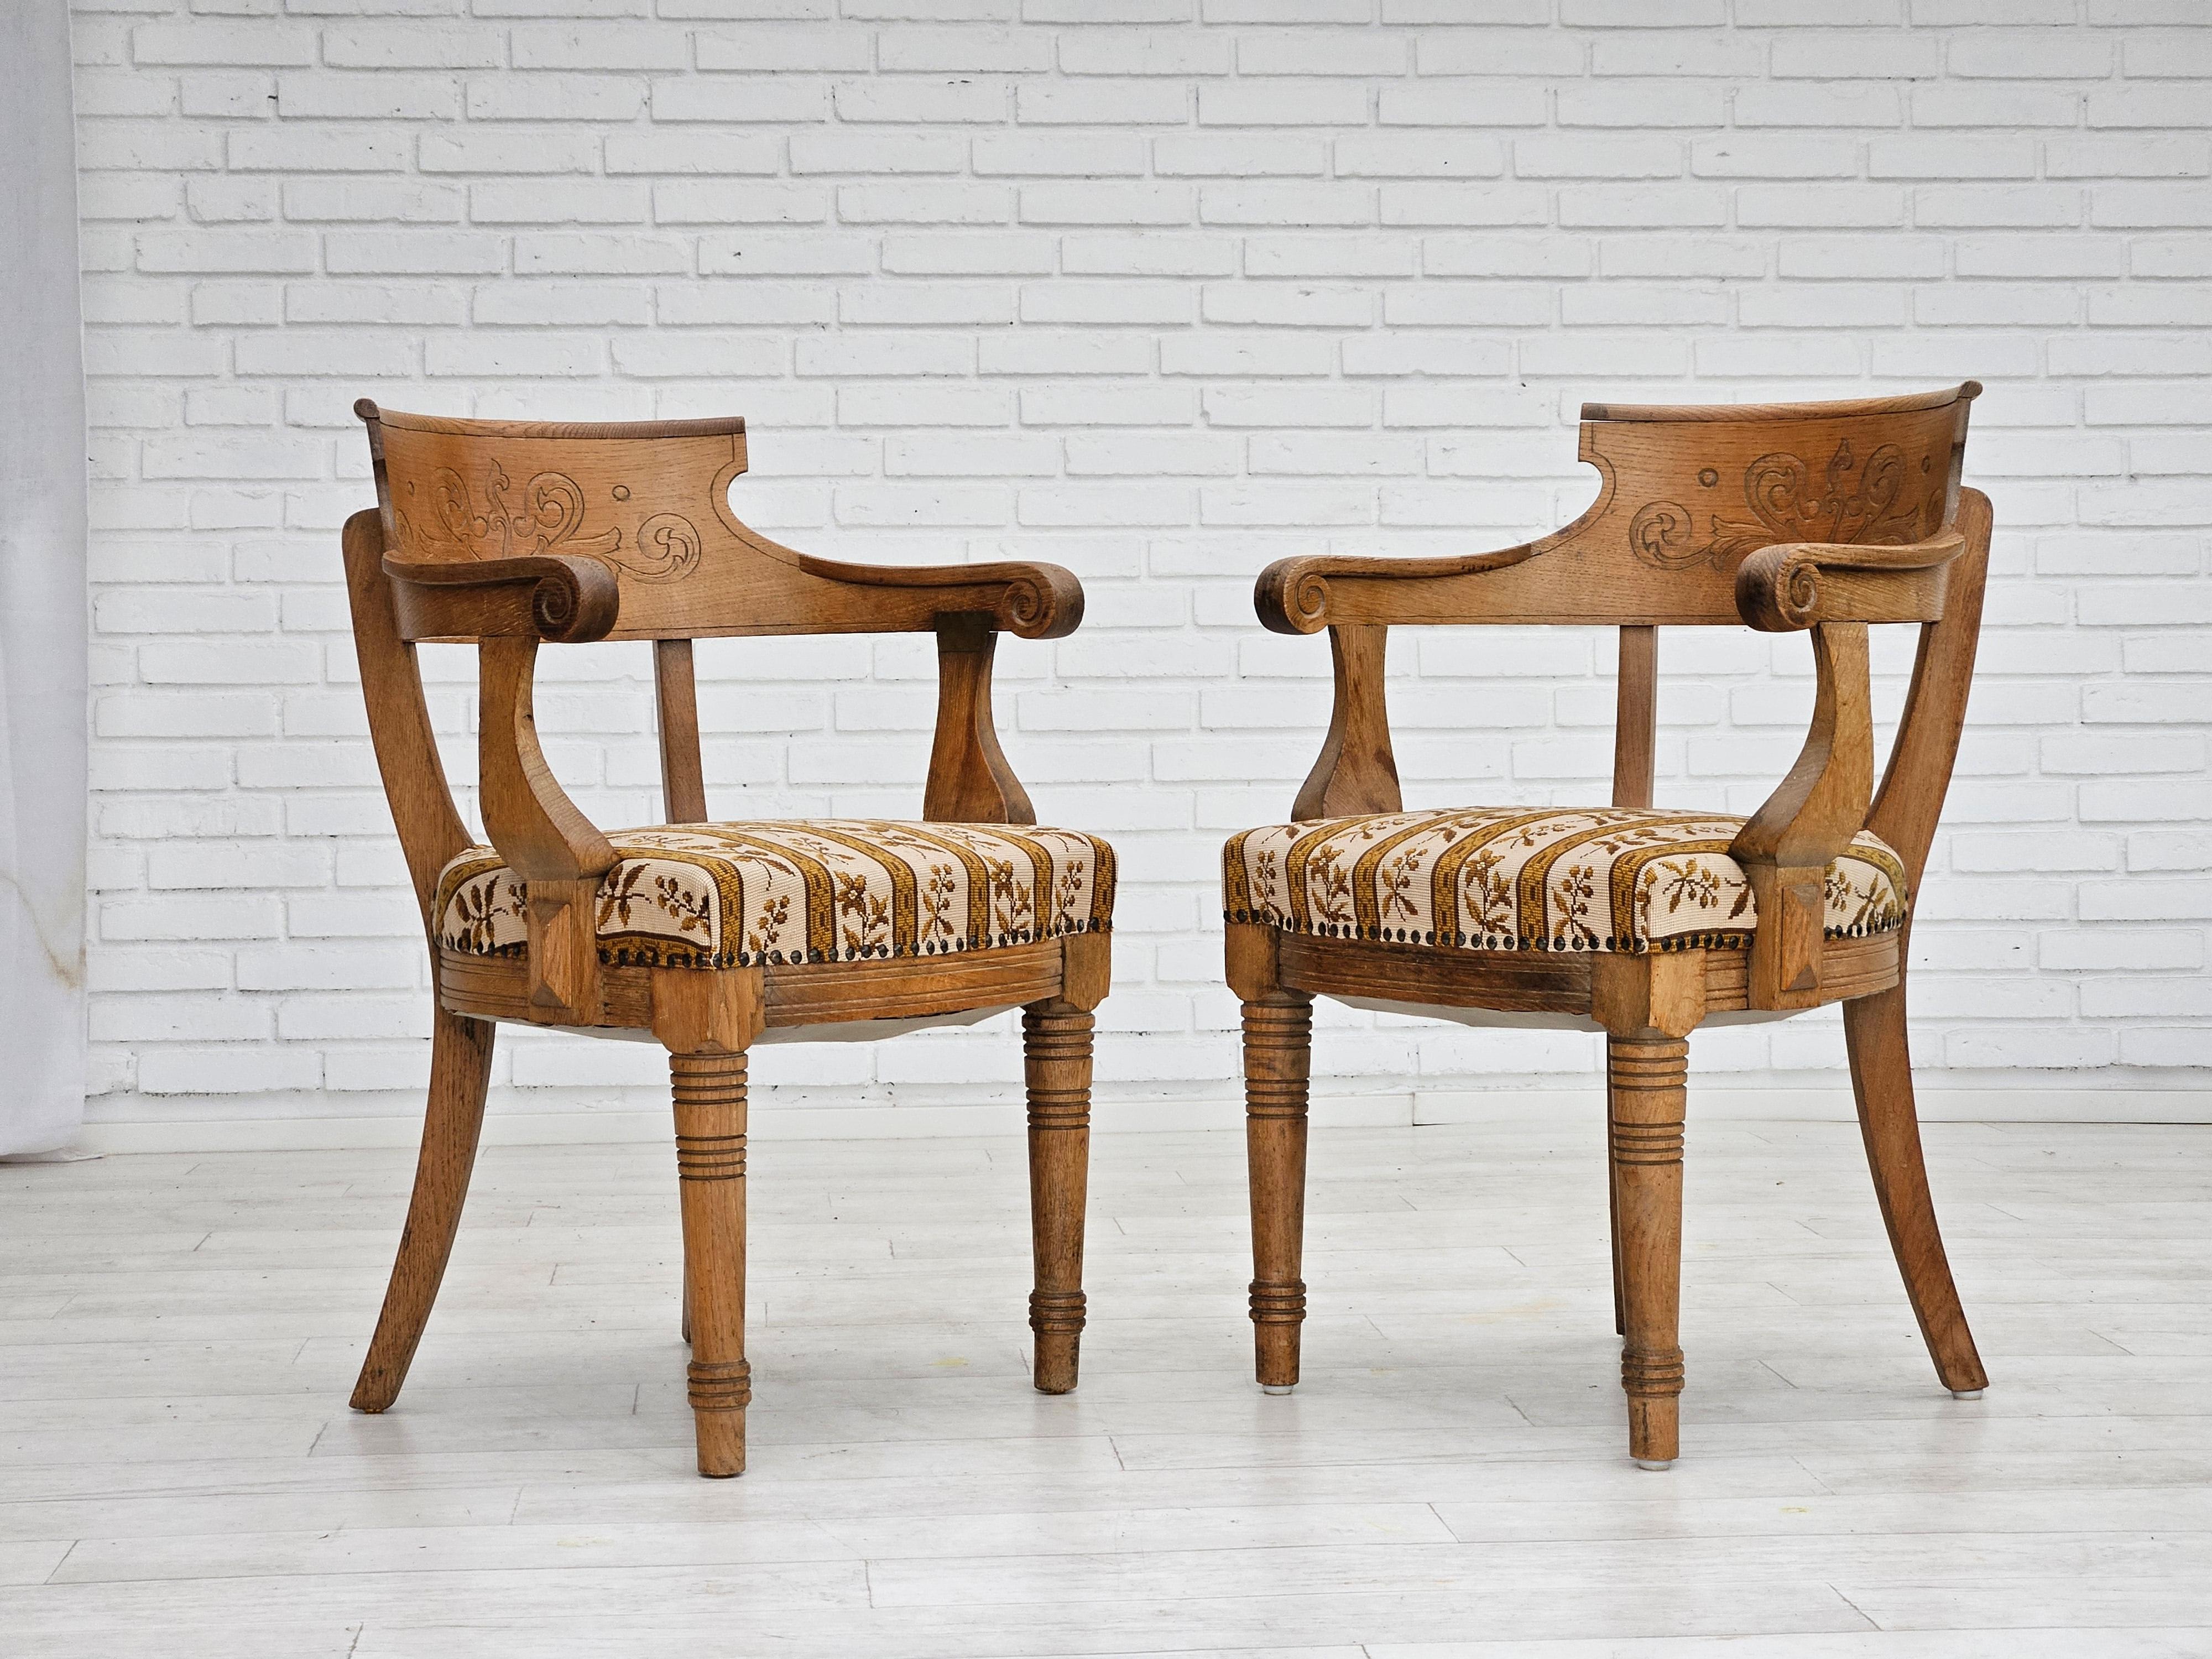 Années 1940-50, Design/One. Paire de deux fauteuils en très bon état d'origine : pas d'odeurs ni de taches. Bois de chêne, laine pour meubles. Dos sculpté à la main. Fabriqué par un fabricant de meubles danois vers 1950.